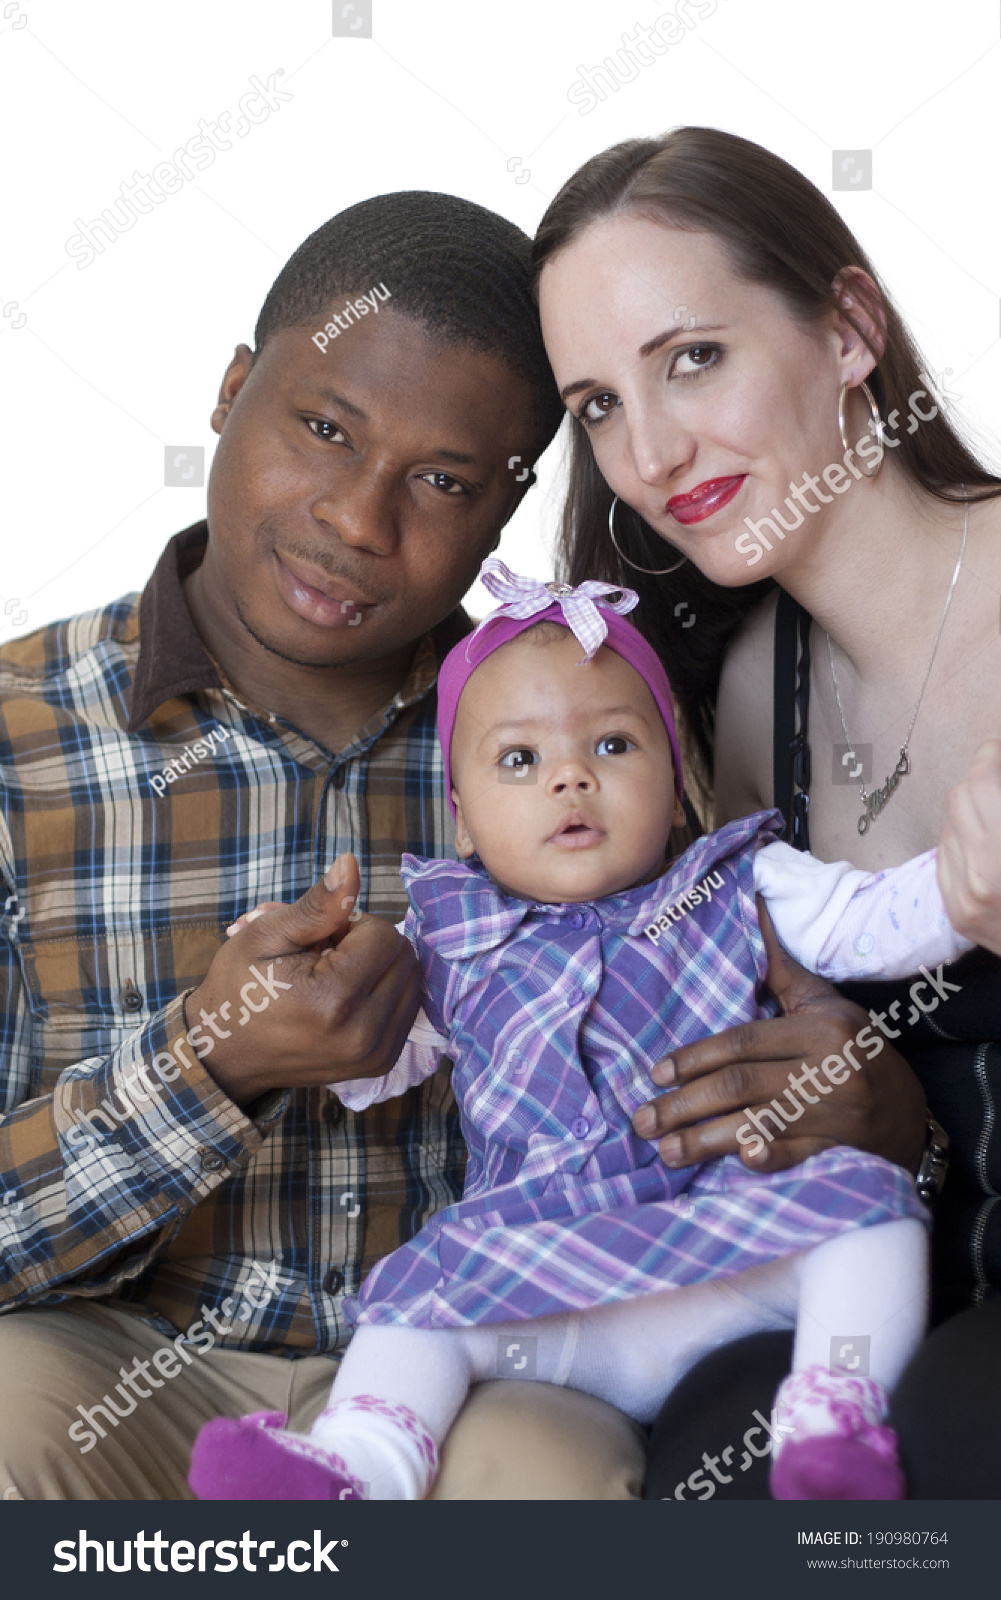 Black having a baby woman white Dream Bible